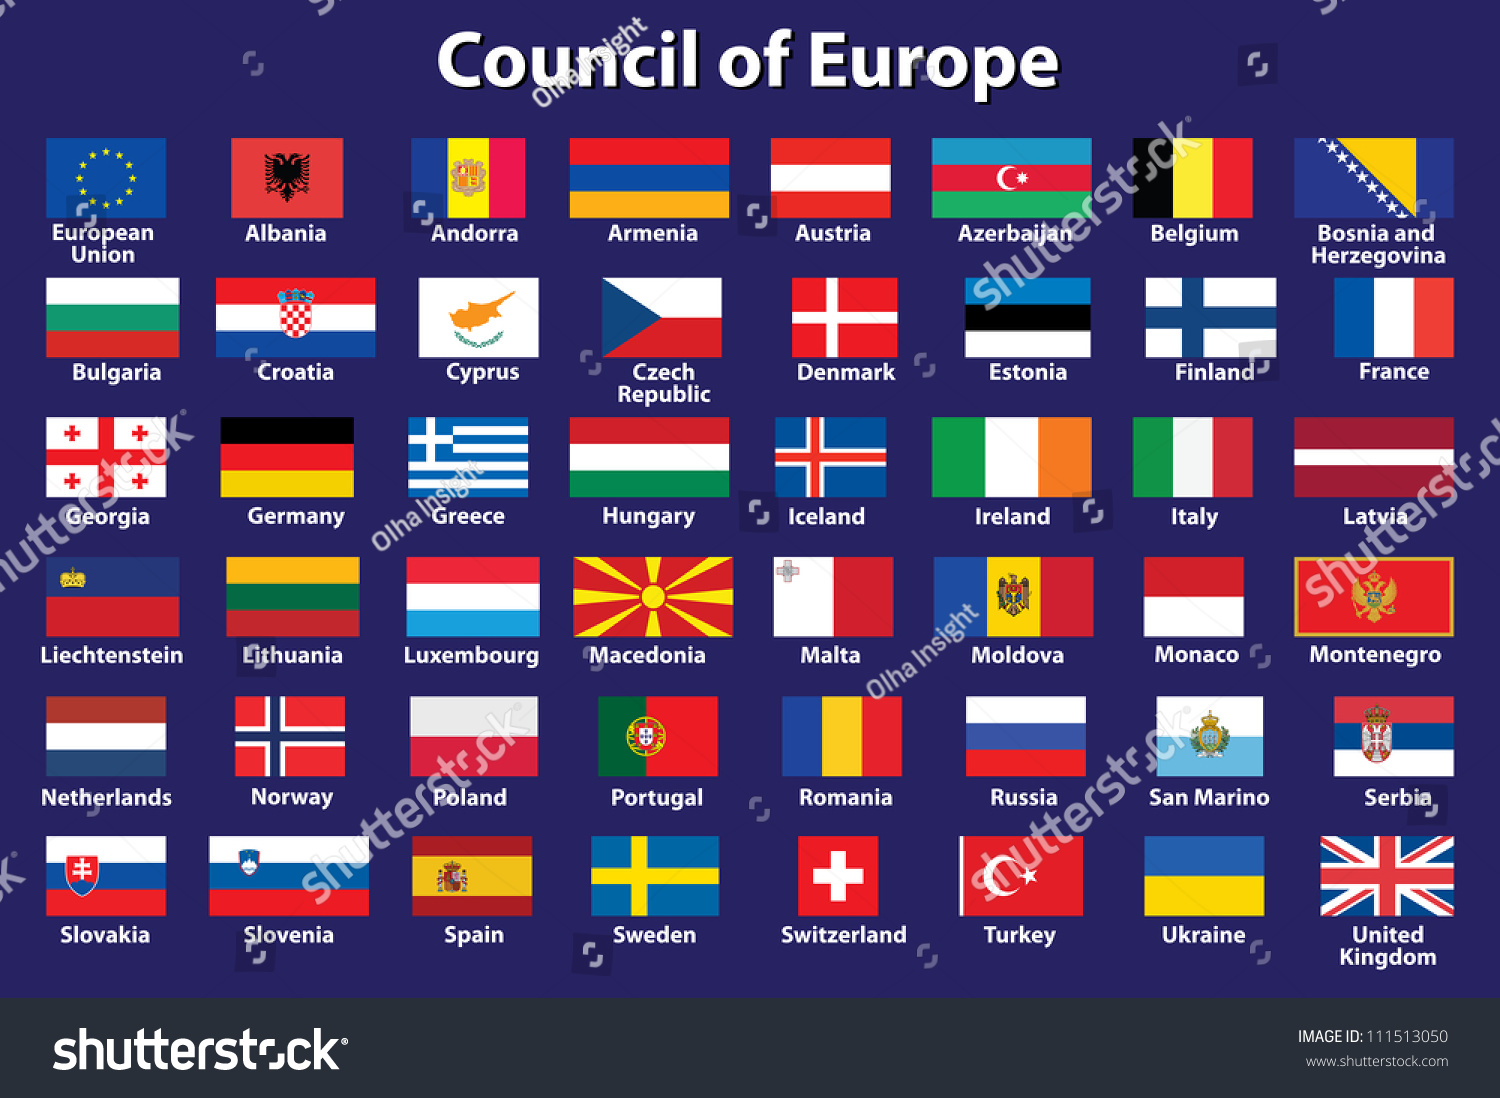 Флаги европейских стран с названиями страны на русском